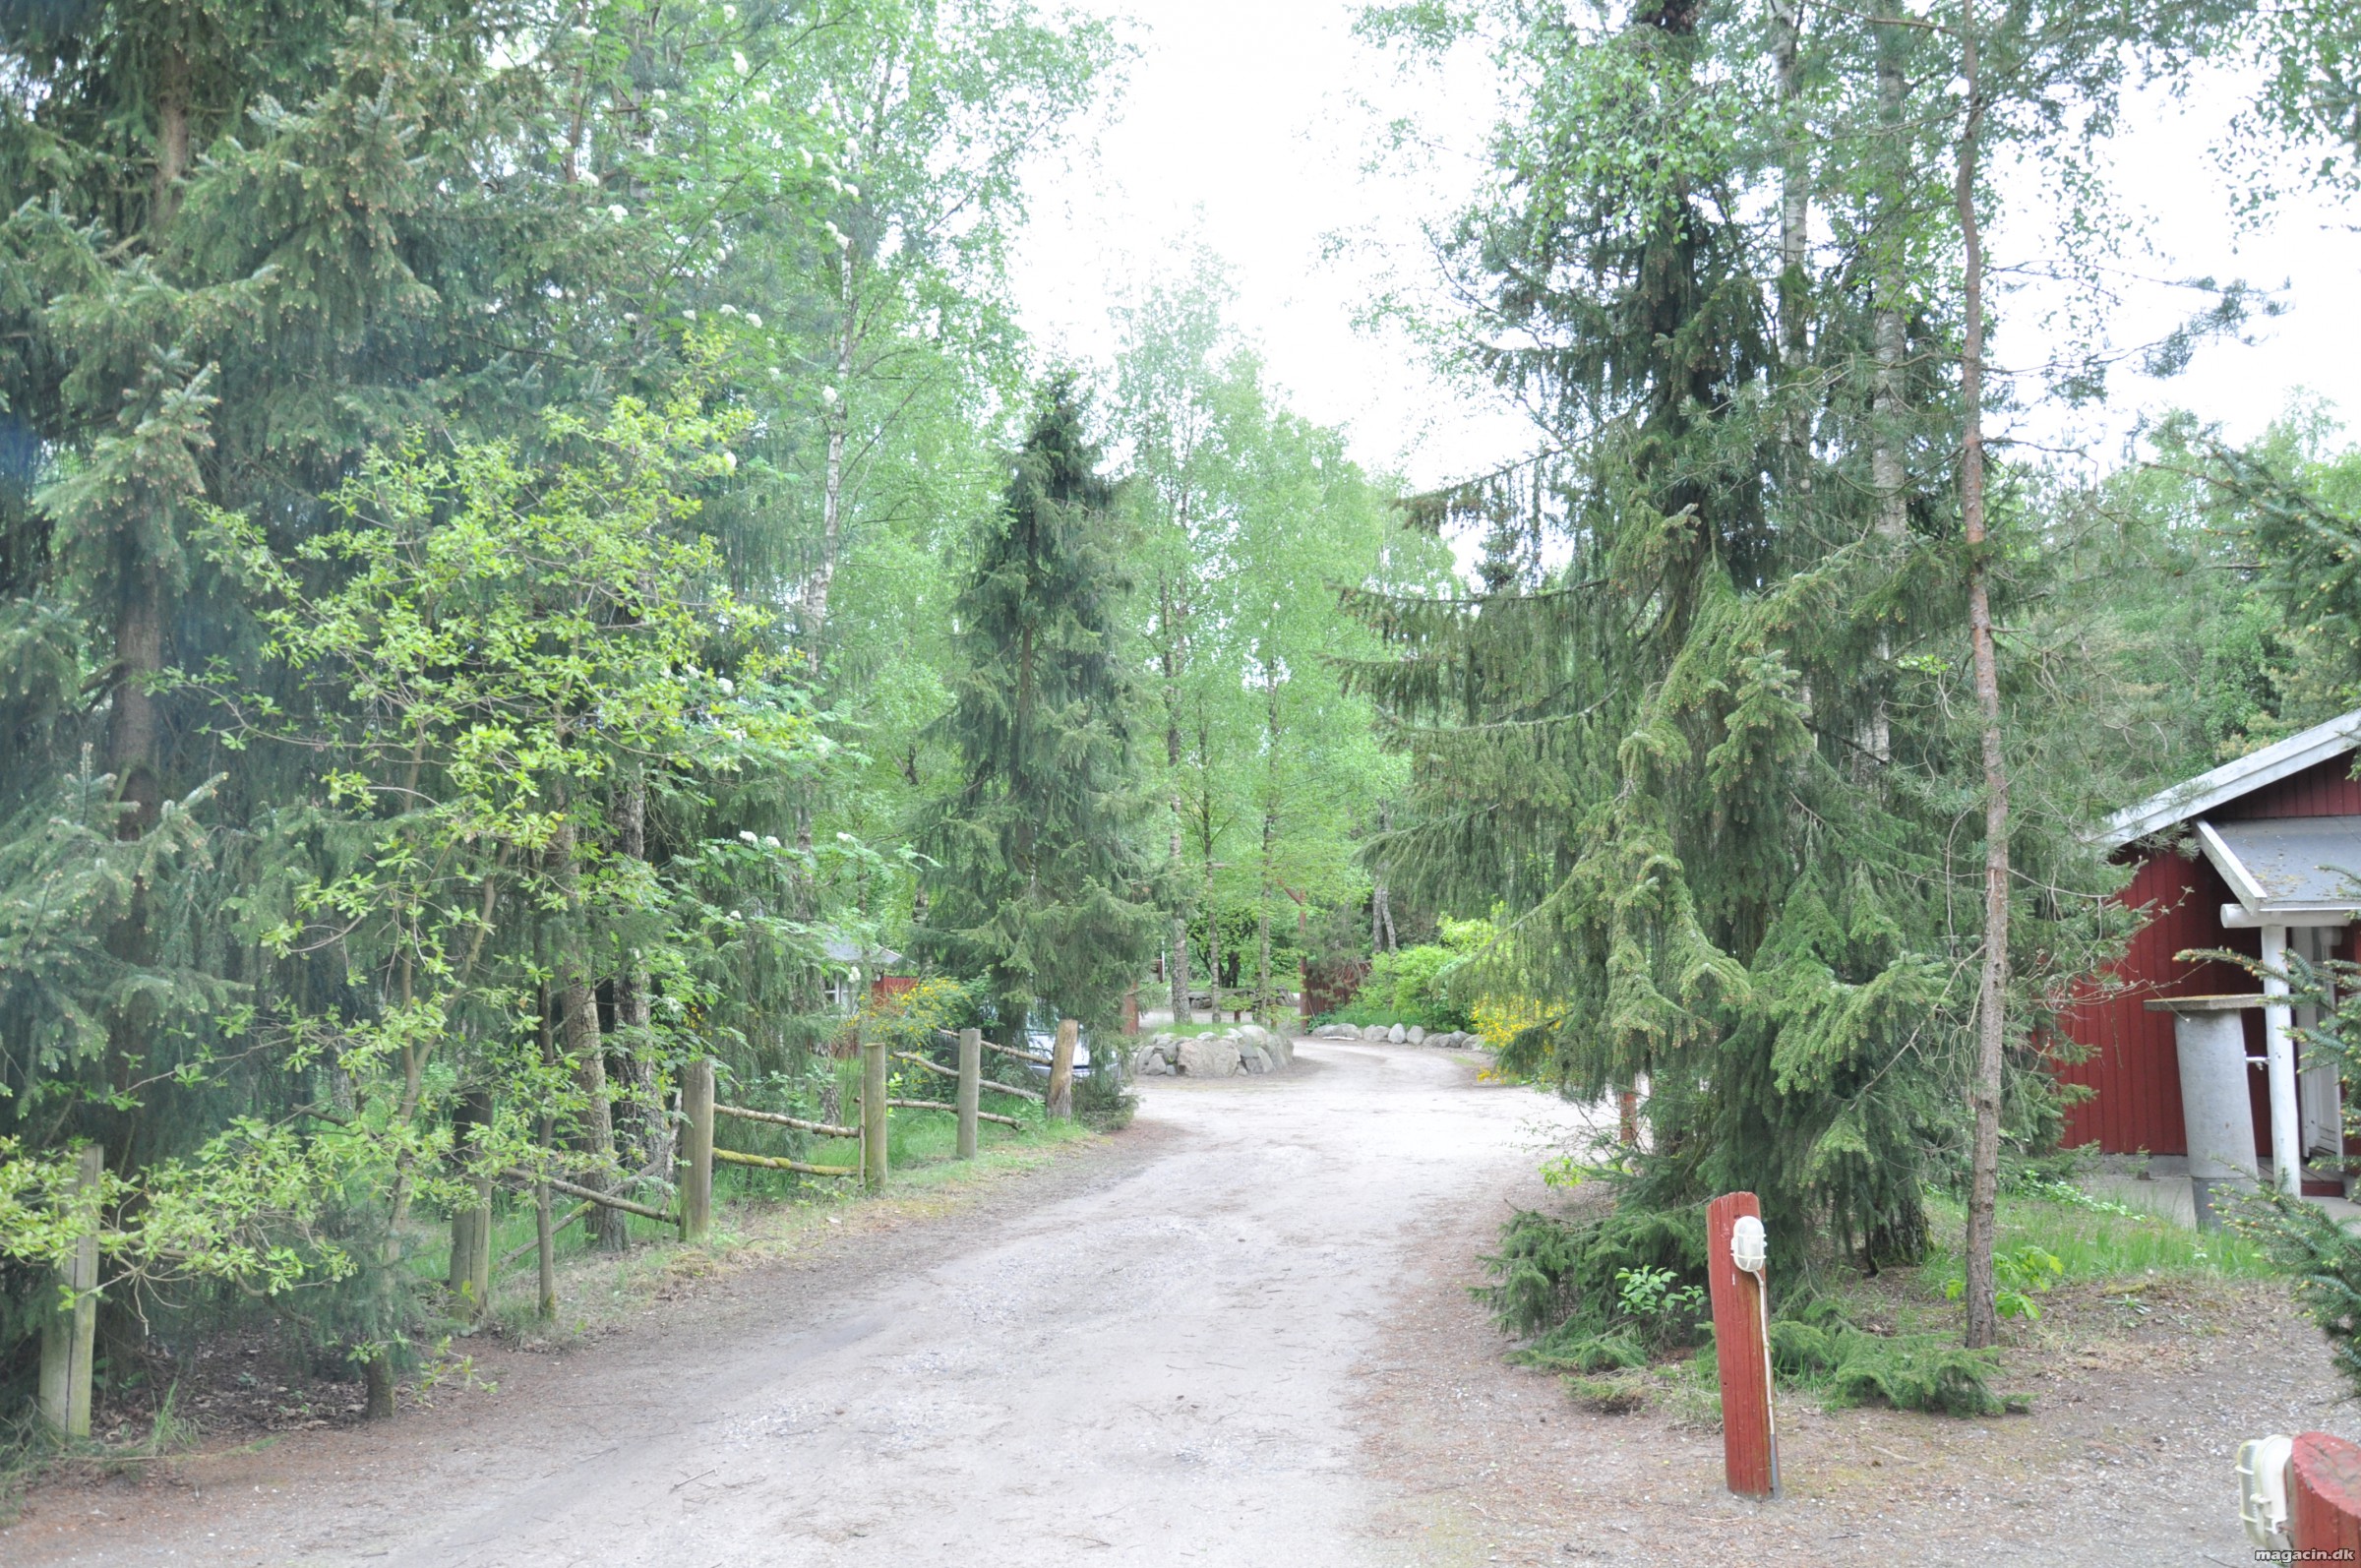 Djurs Hytteby & Camping